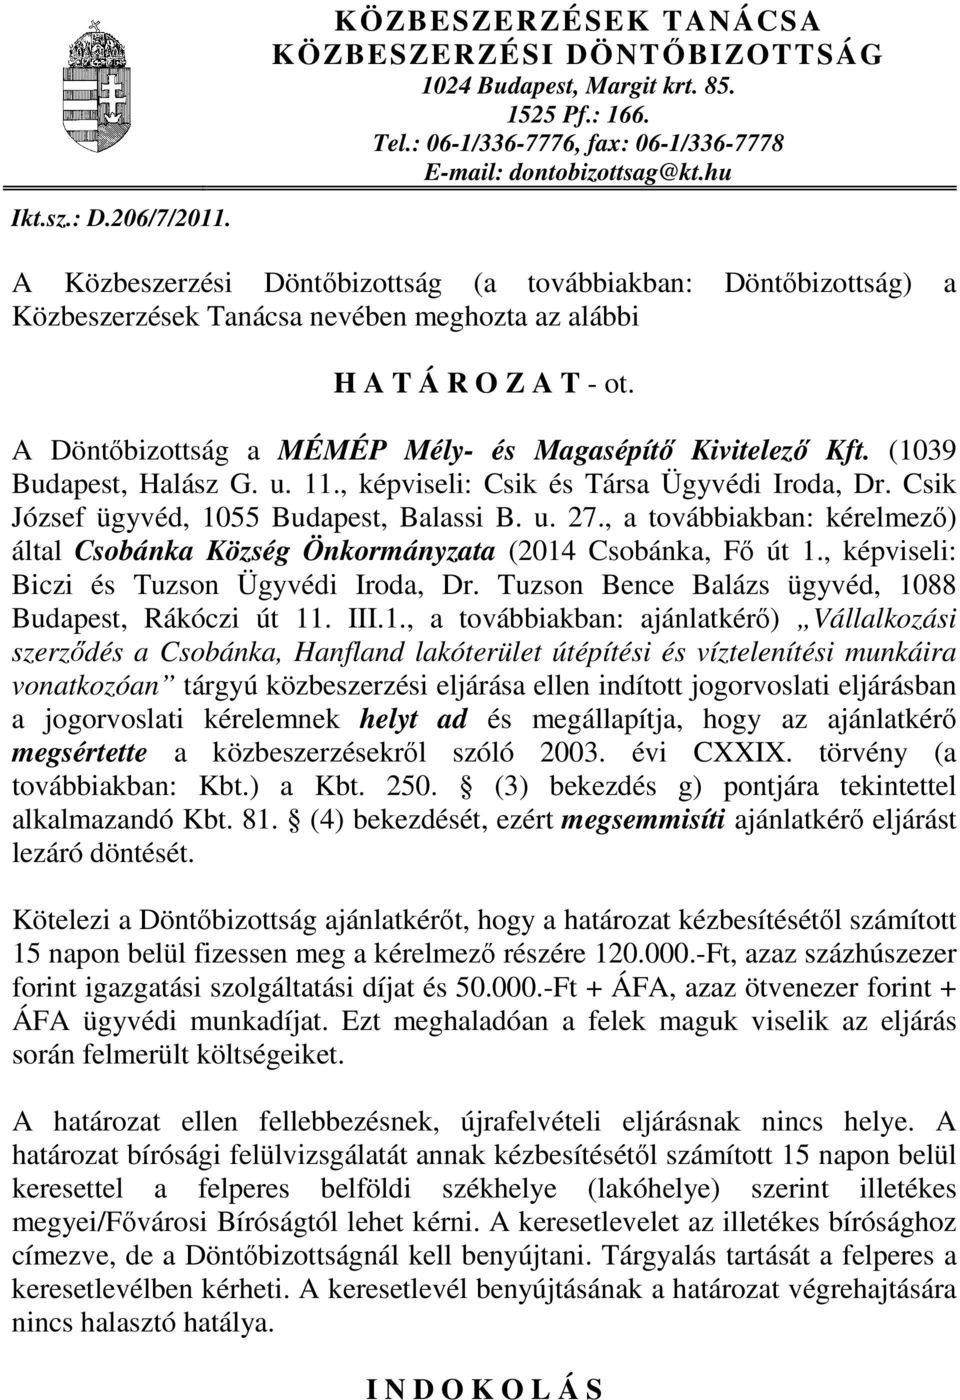 (1039 Budapest, Halász G. u. 11., képviseli: Csik és Társa Ügyvédi Iroda, Dr. Csik József ügyvéd, 1055 Budapest, Balassi B. u. 27.